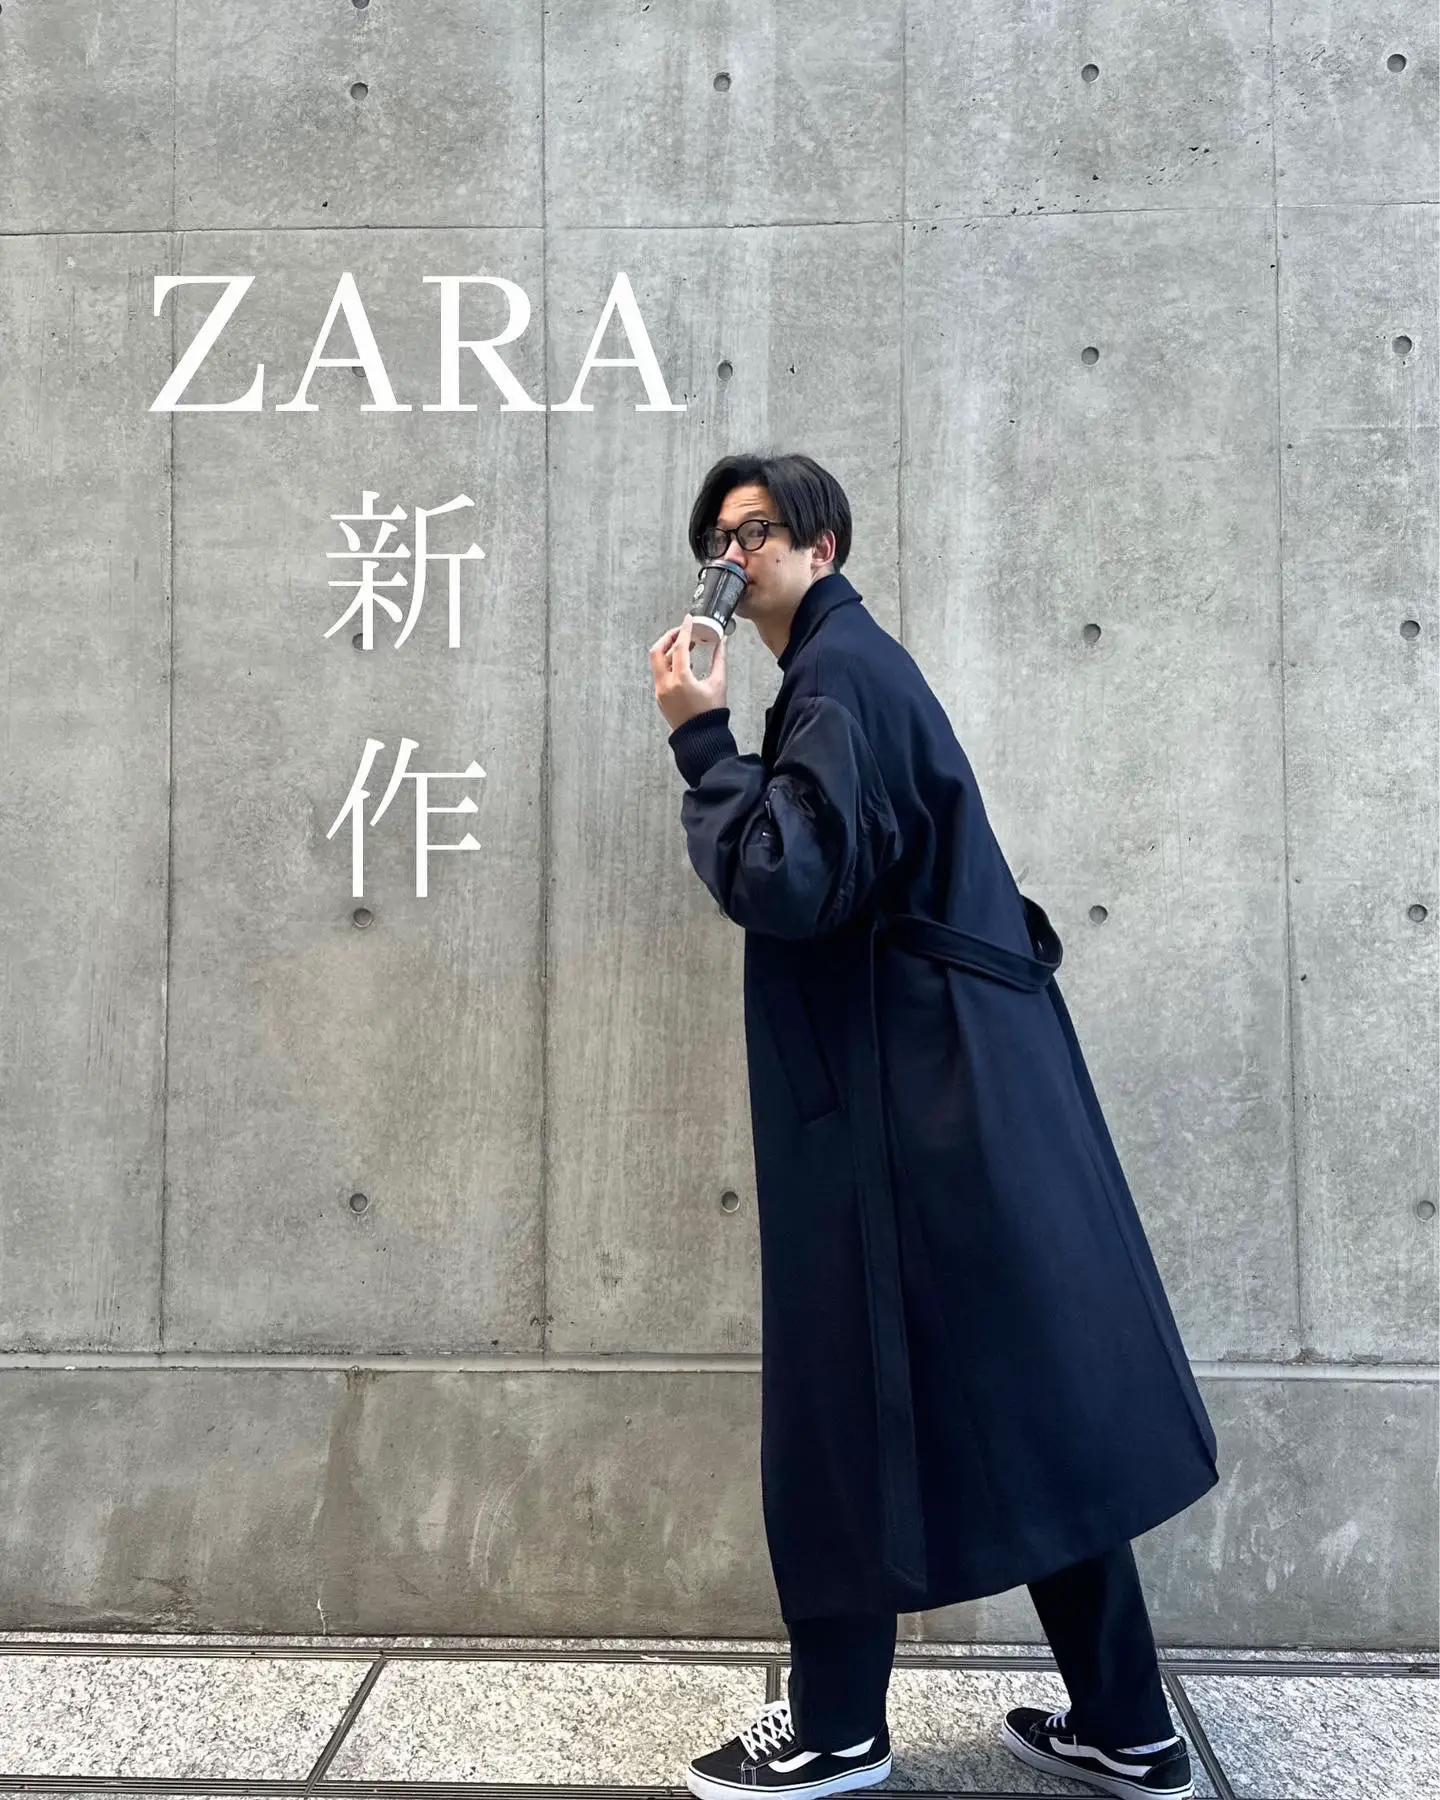 【夏休み限定セール中】ZARA ★ マッチングボンバーコート ネイビー